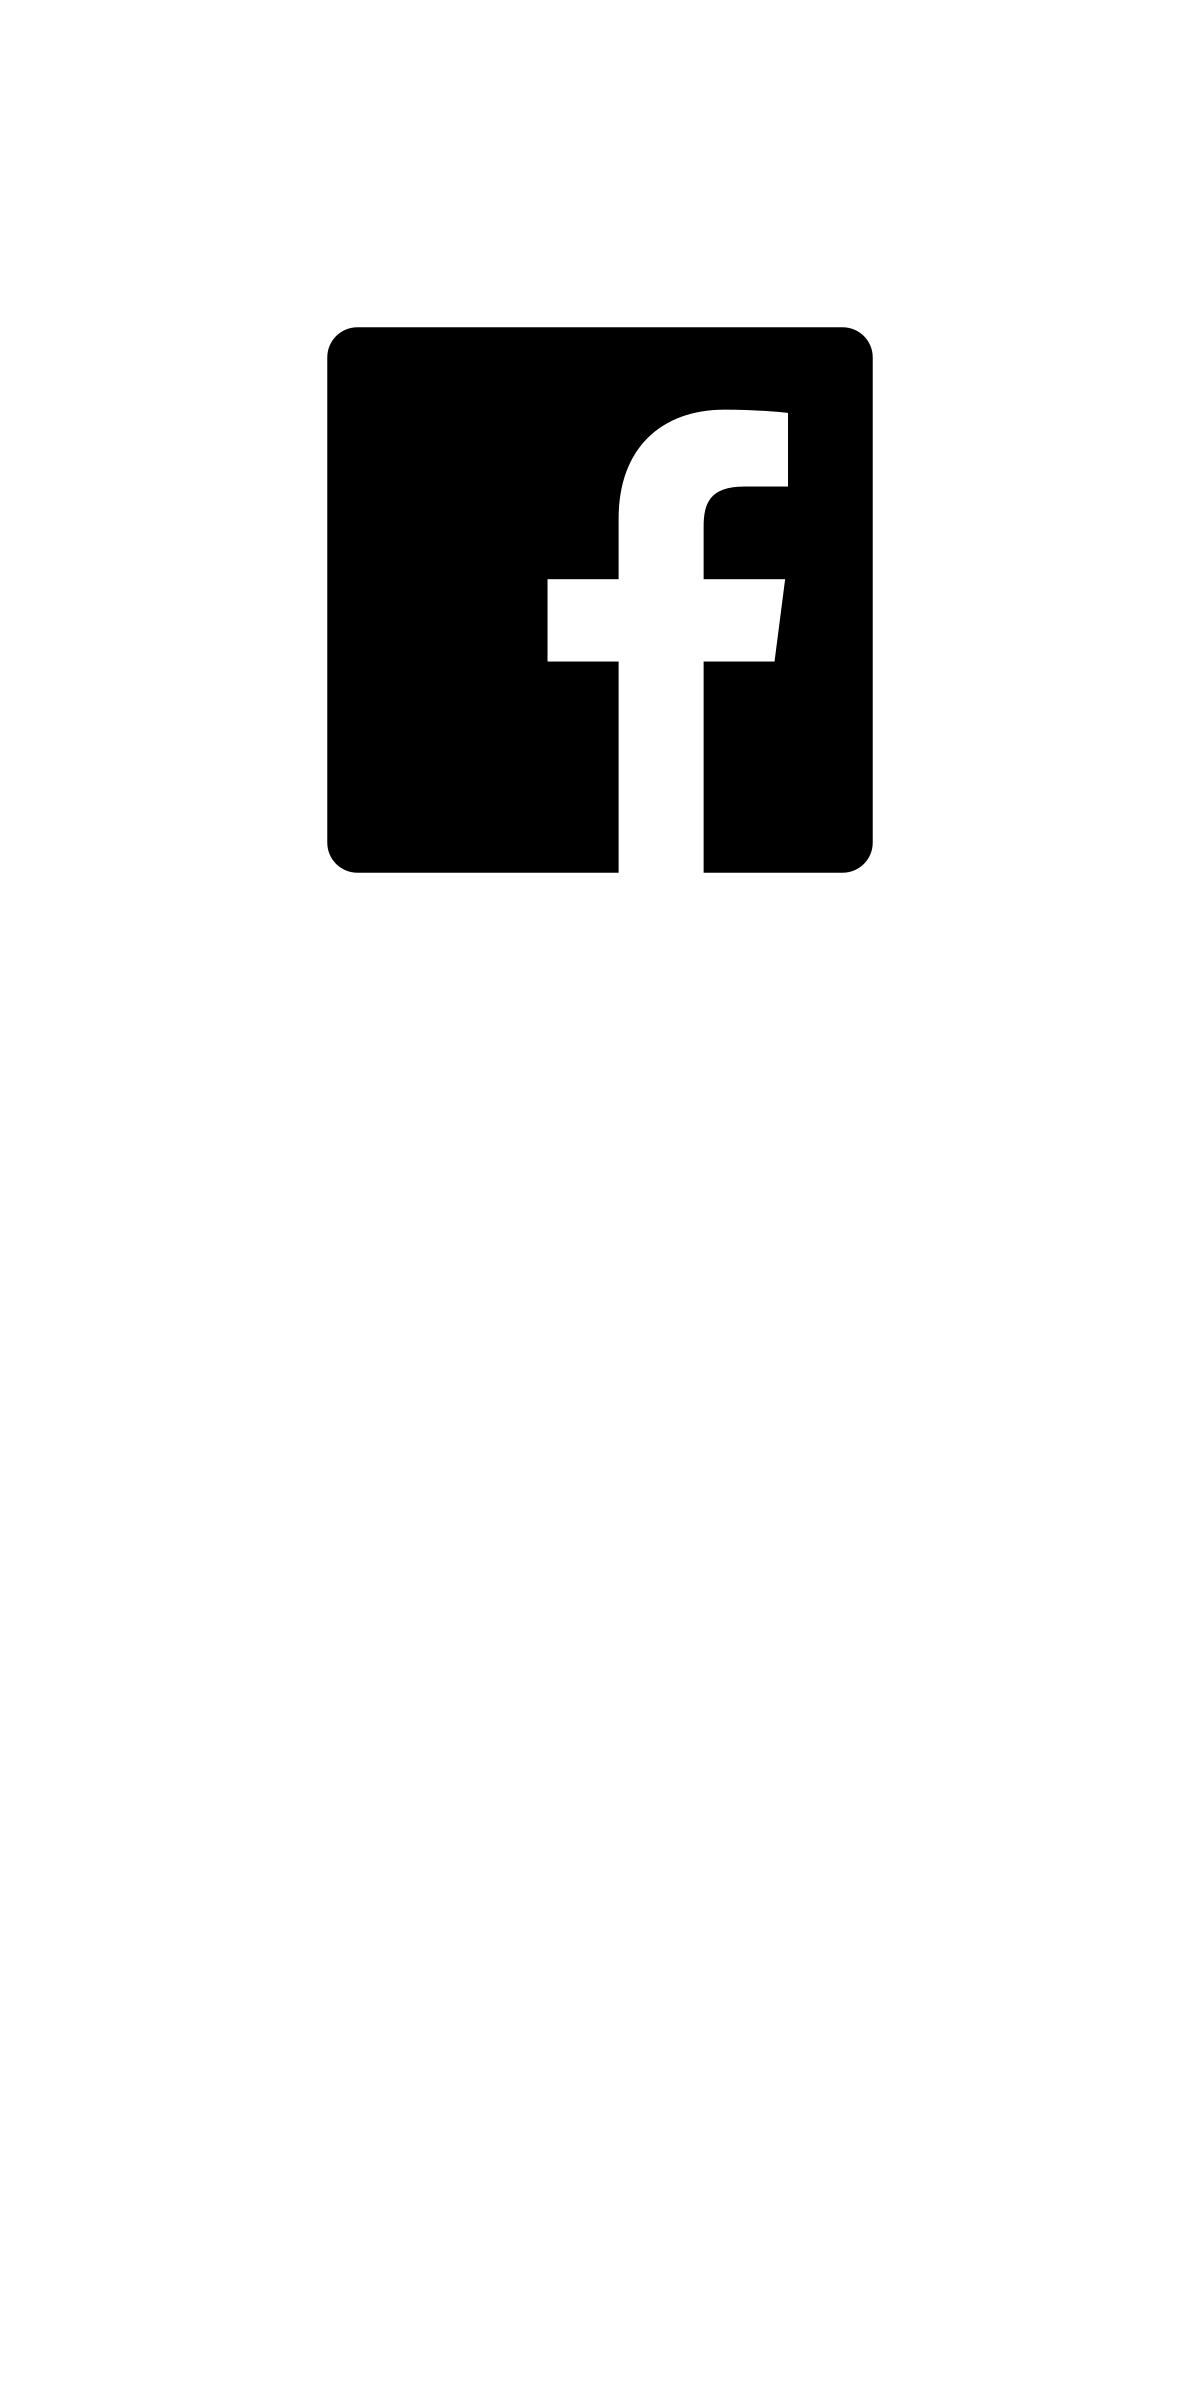 Facebook logo أبيض وأسود PNG صورة شفافة